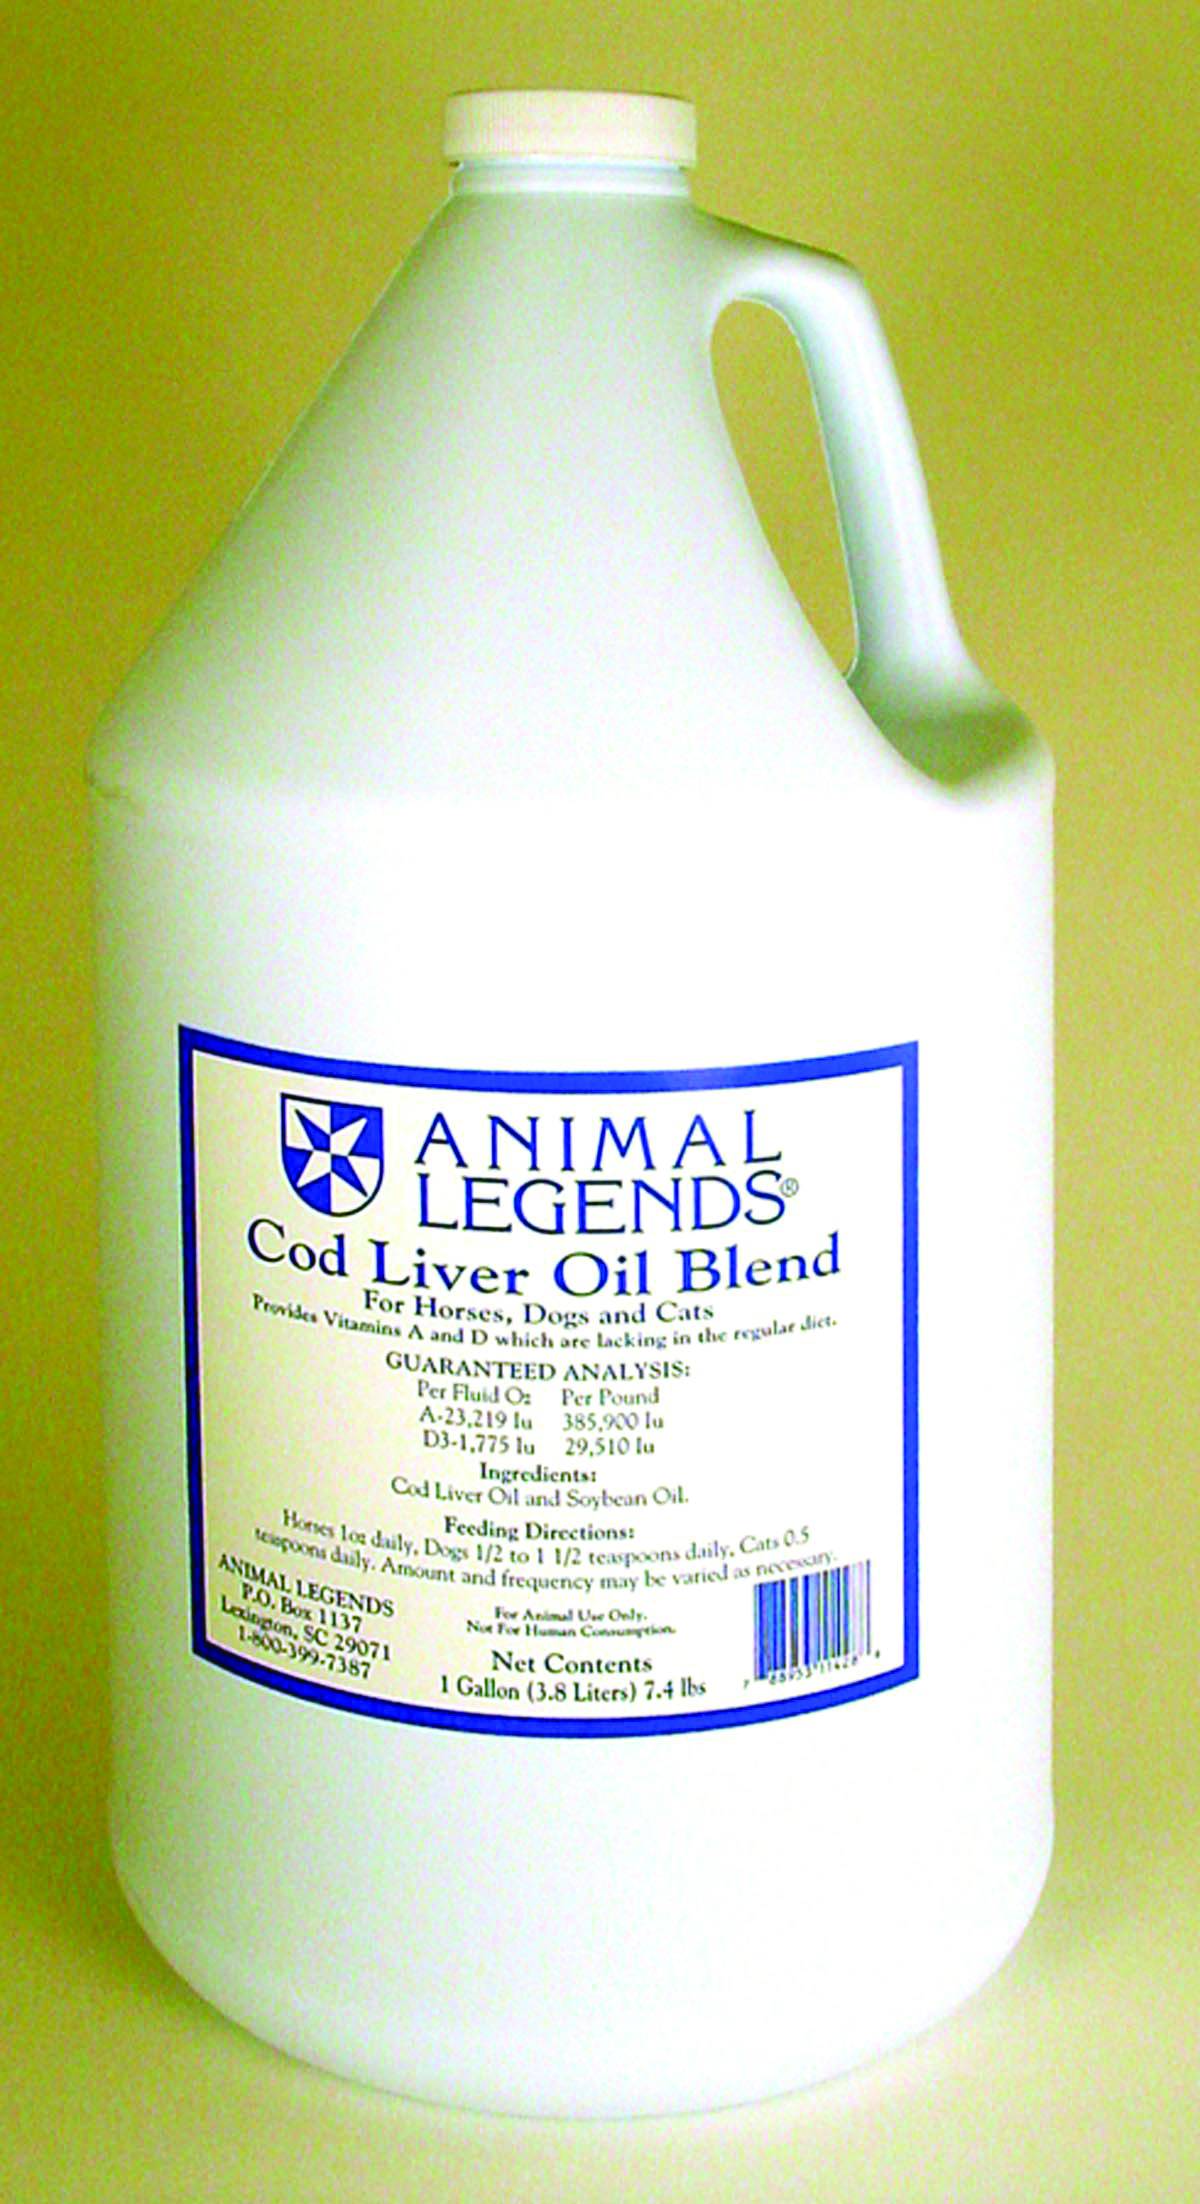 Animal Legends Cod Liver Oil Blend